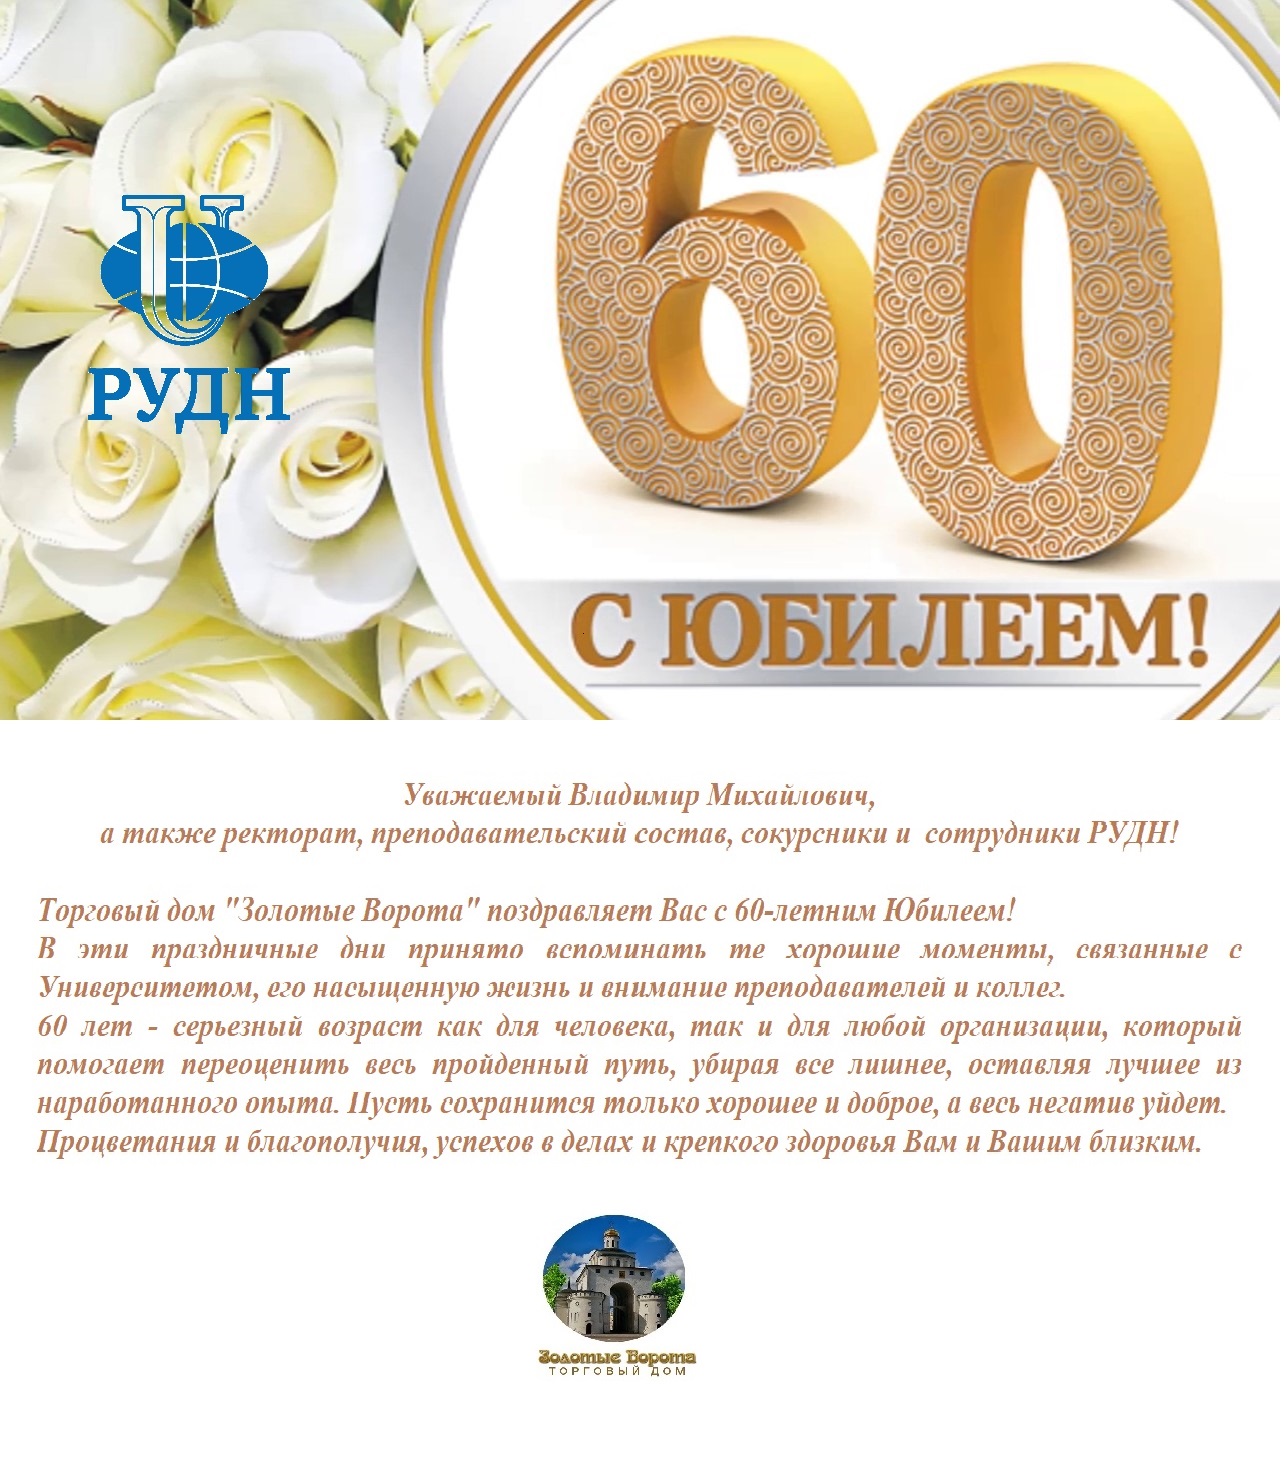 Поздравление Торгового дома Золотые Ворота РУДН с 60-летием